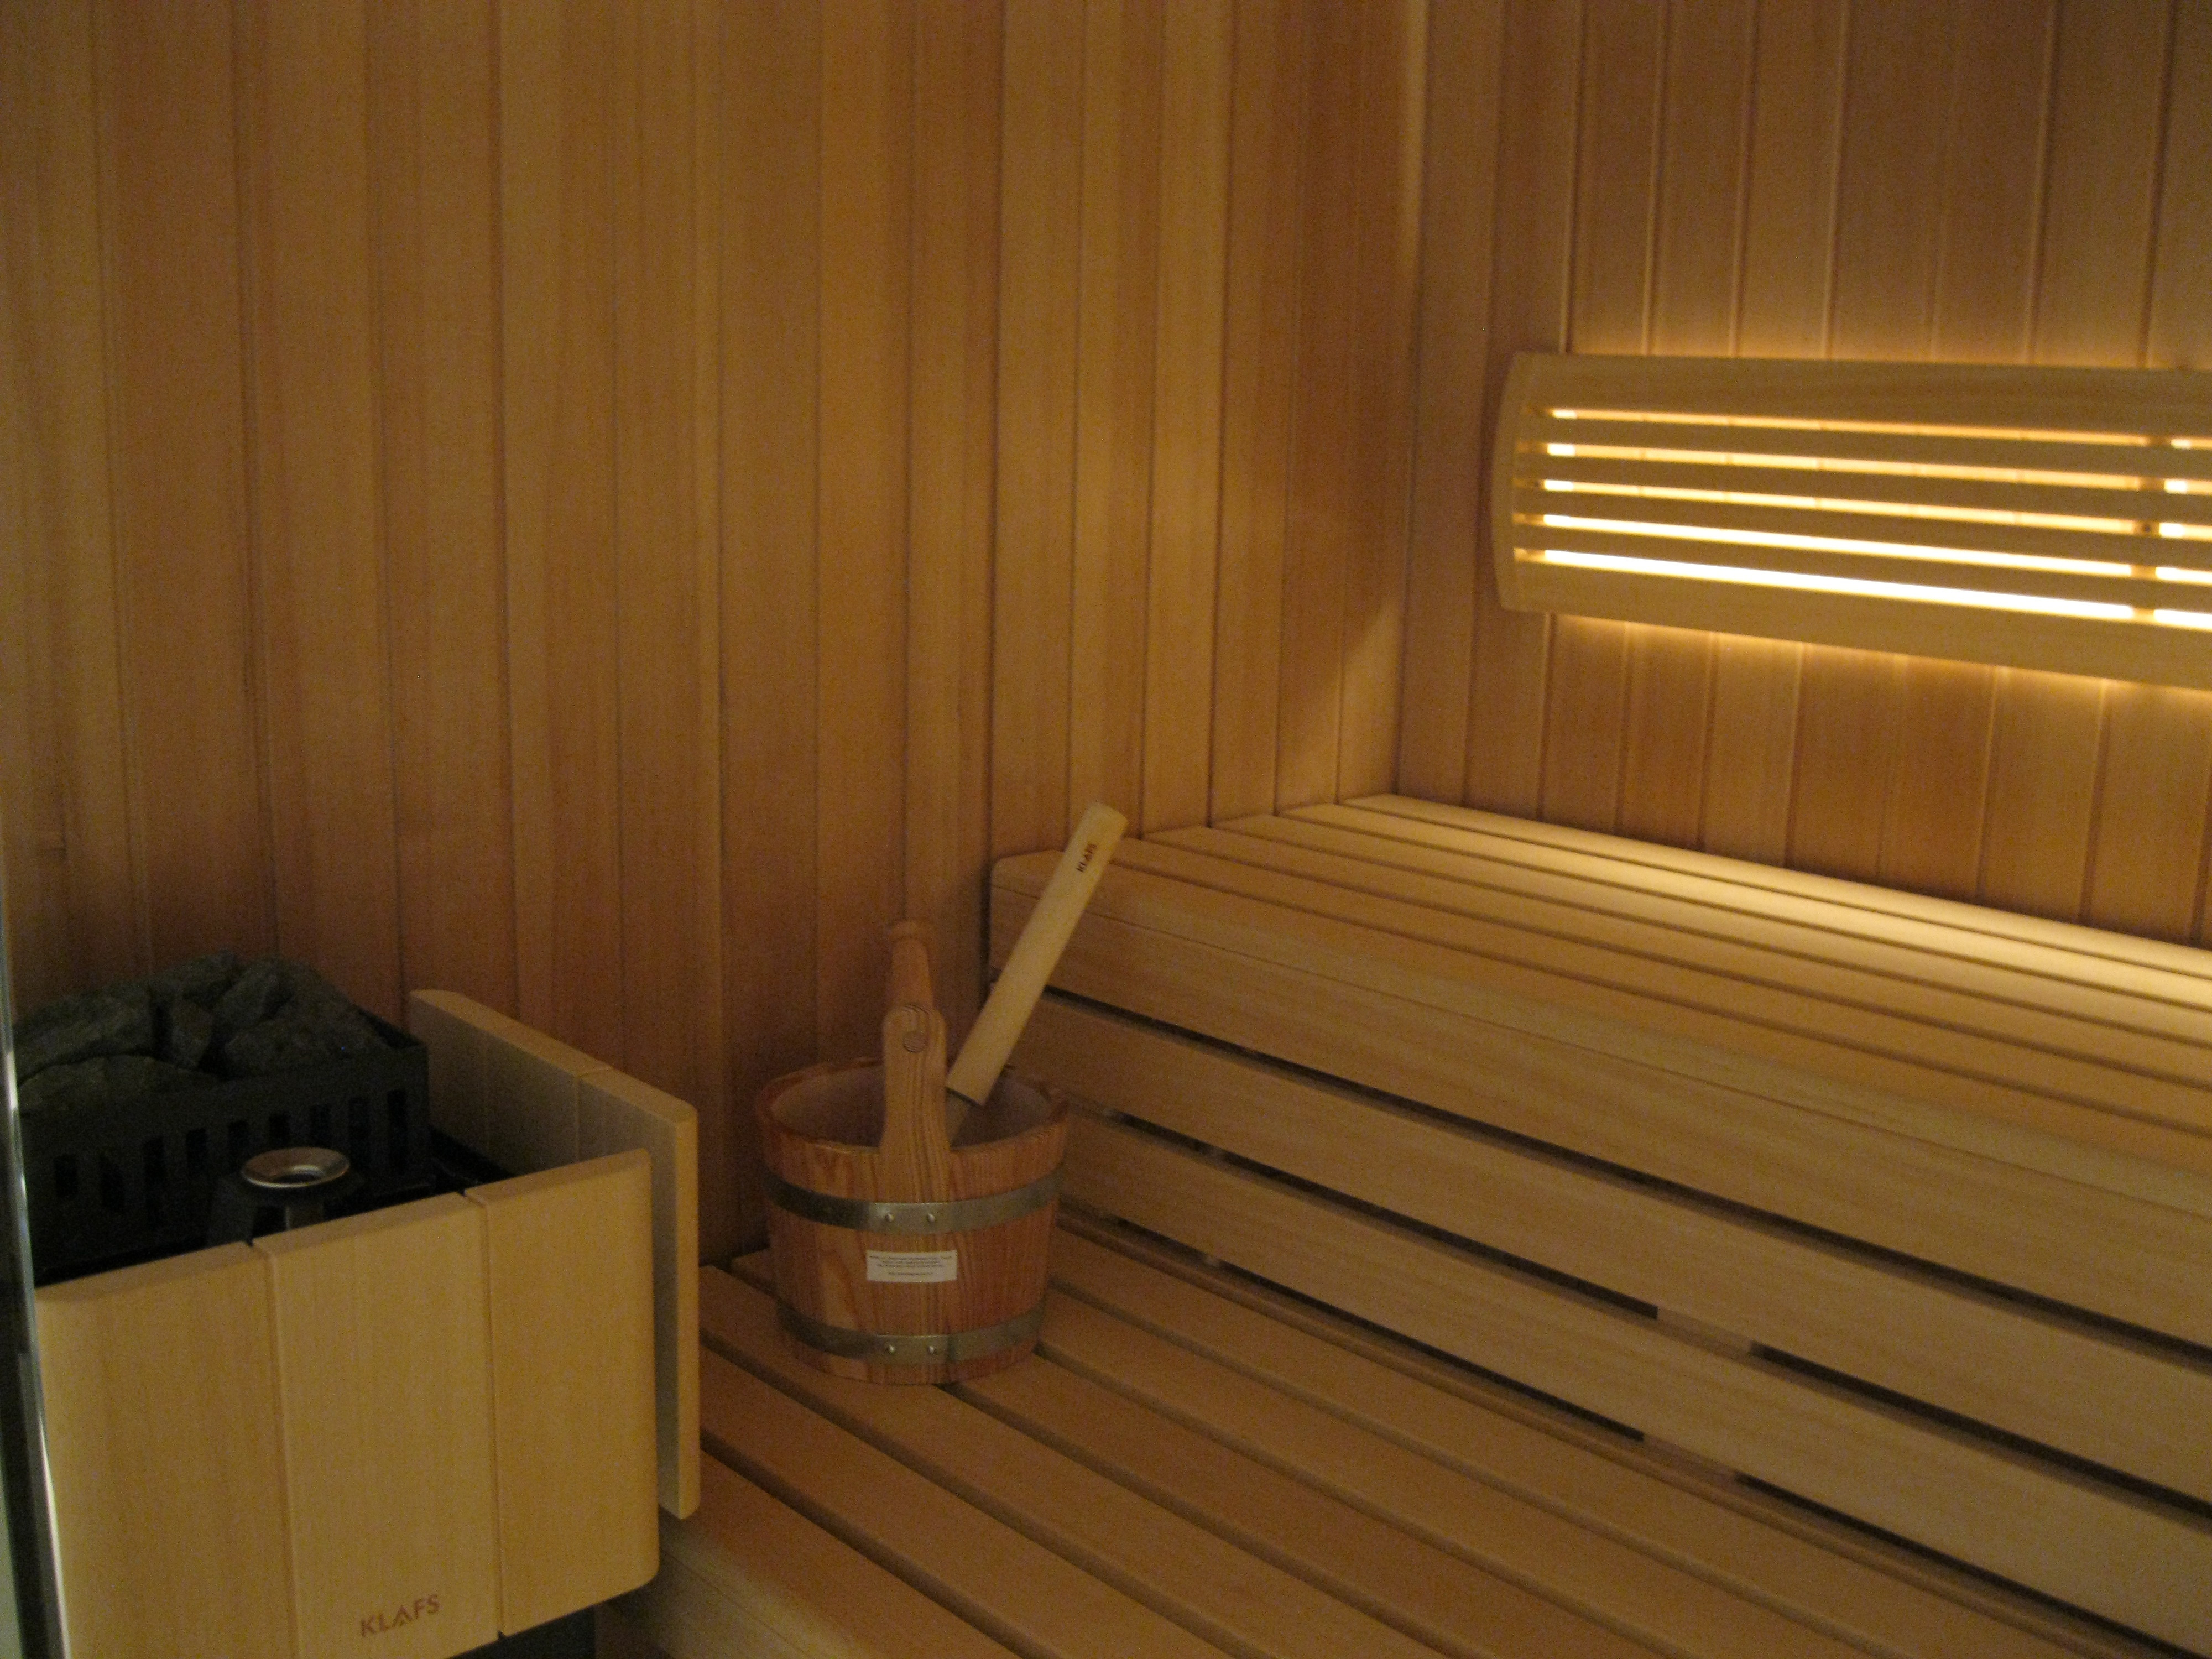 sauna-op-maat-hanolux-antwerpen-turnhout-klafs-8.jpg